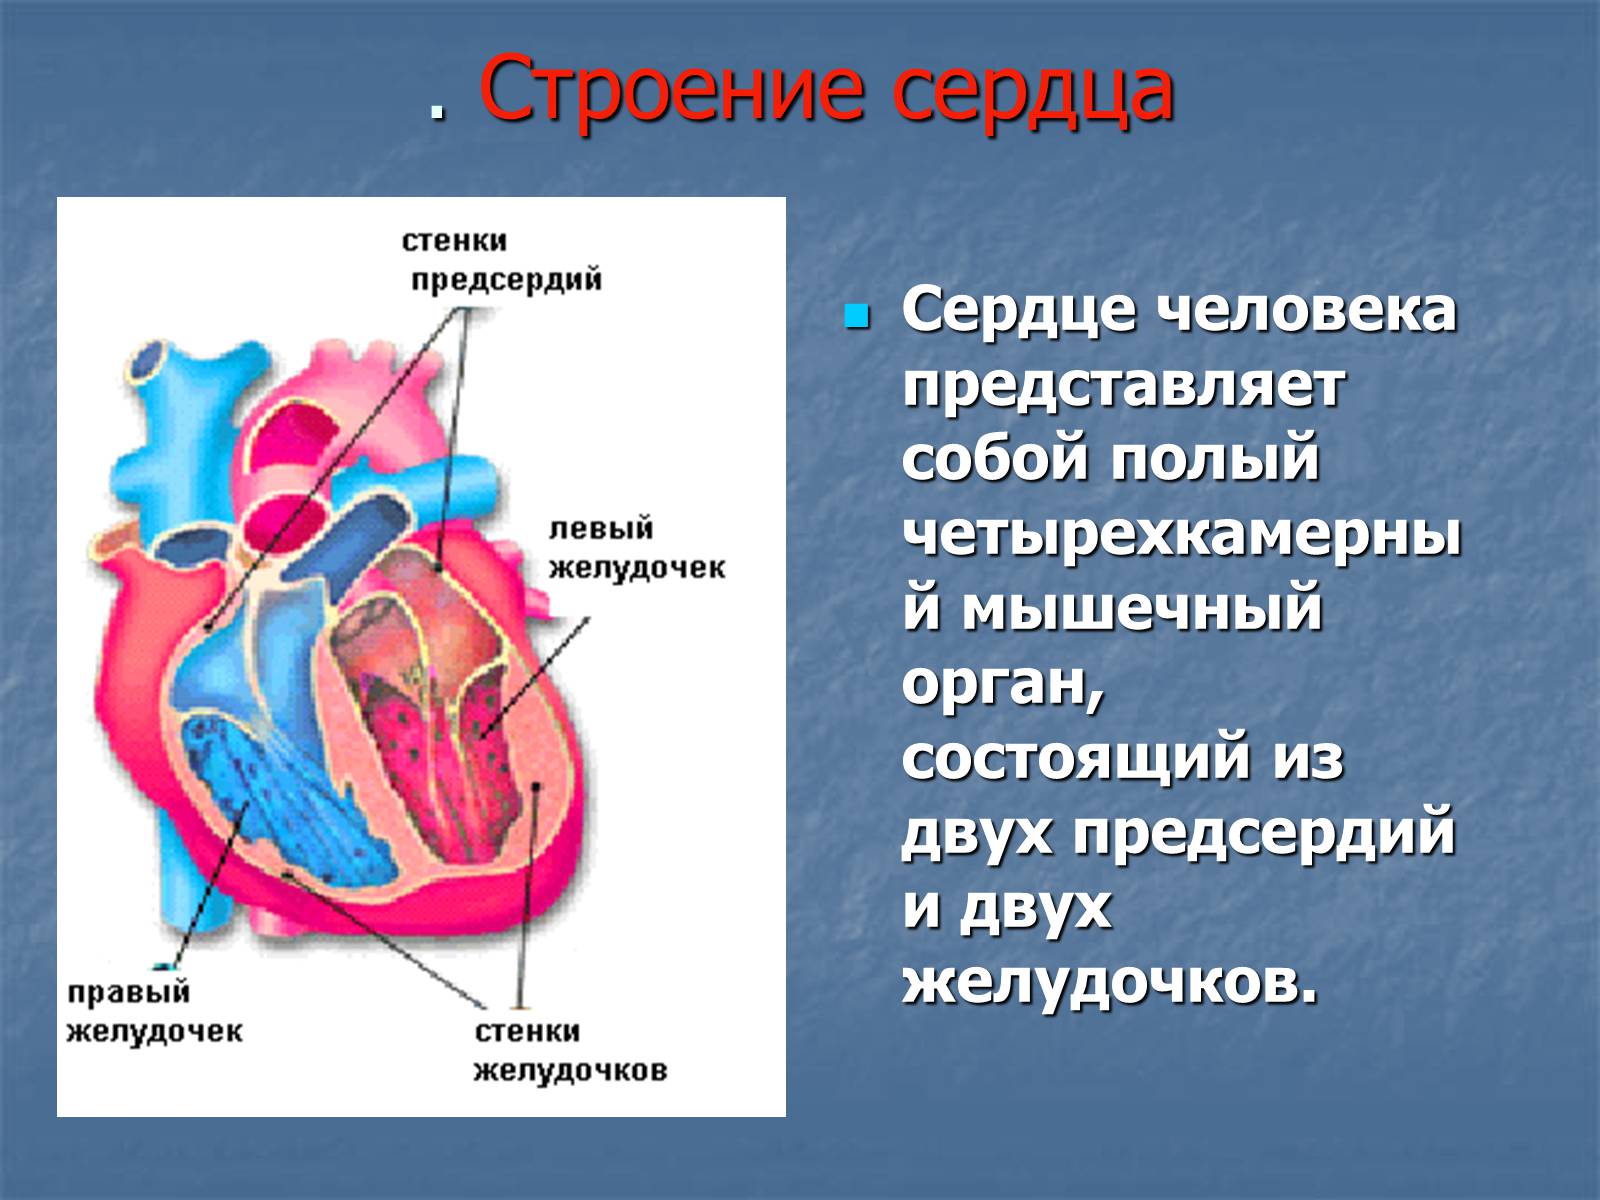 В правый желудочек сердца человека поступает. Строение желудочков сердца анатомия. 2 Желудочка и 2 предсердия. Сердце анатомия желудочки и предсердия. Строение сердца человека желудочки и предсердия.